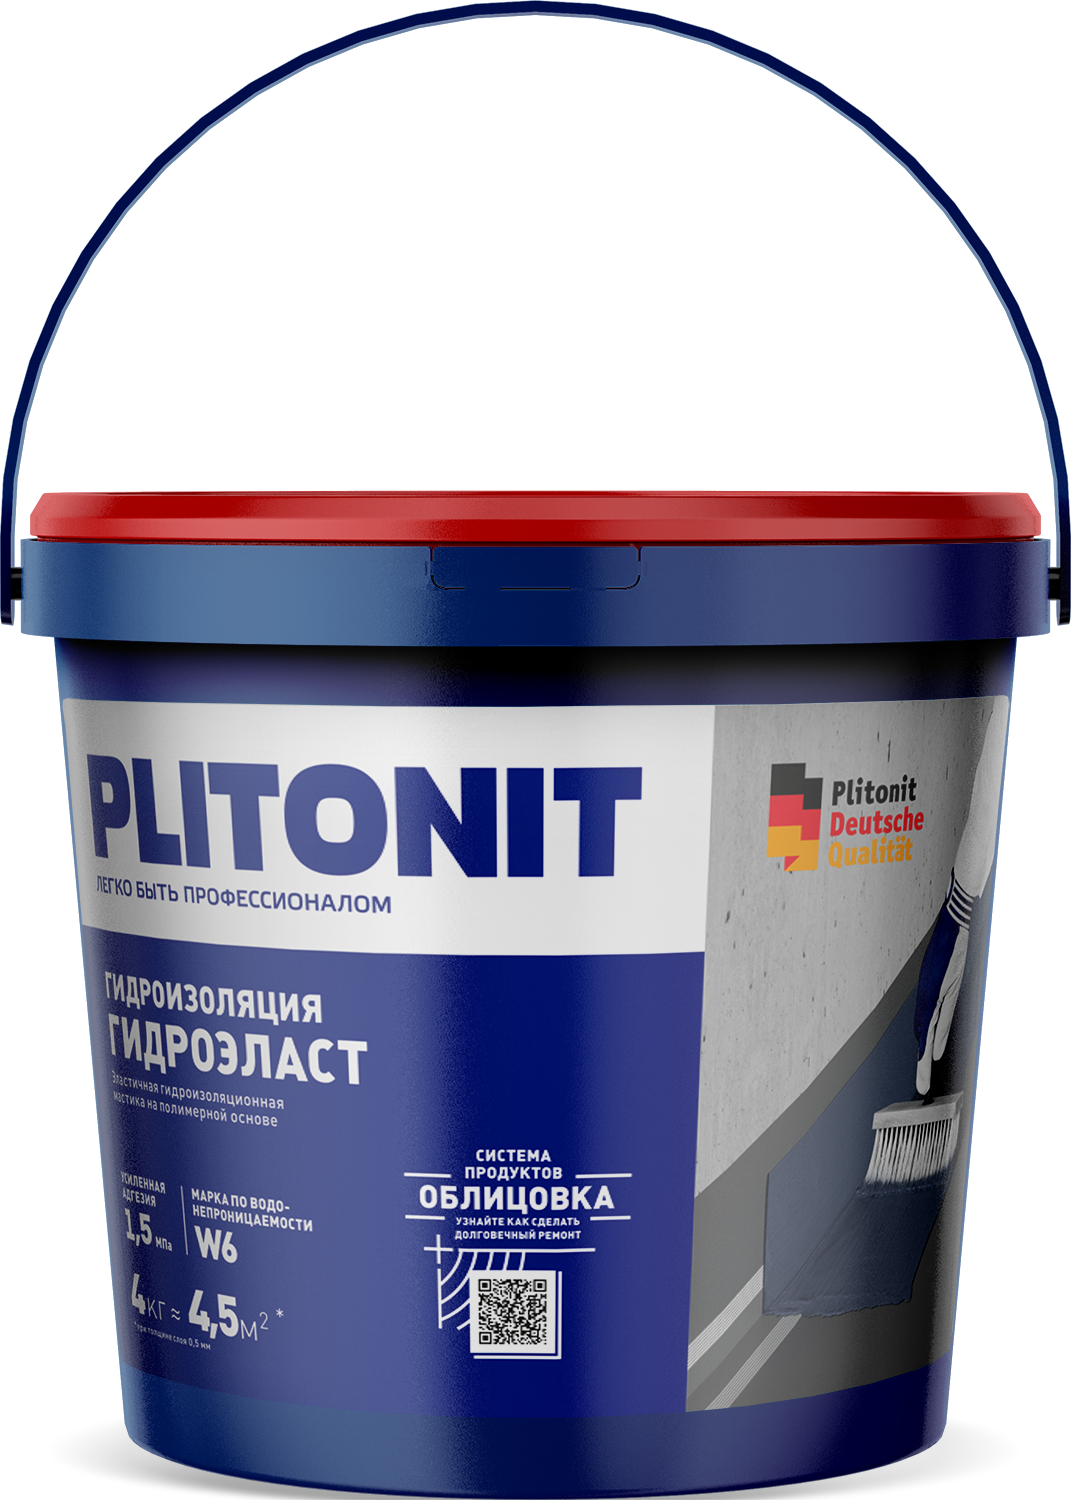 PLITONIT ГидроЭласт Эластичная гидроизоляционная мастика на полимерной основе 4 кг